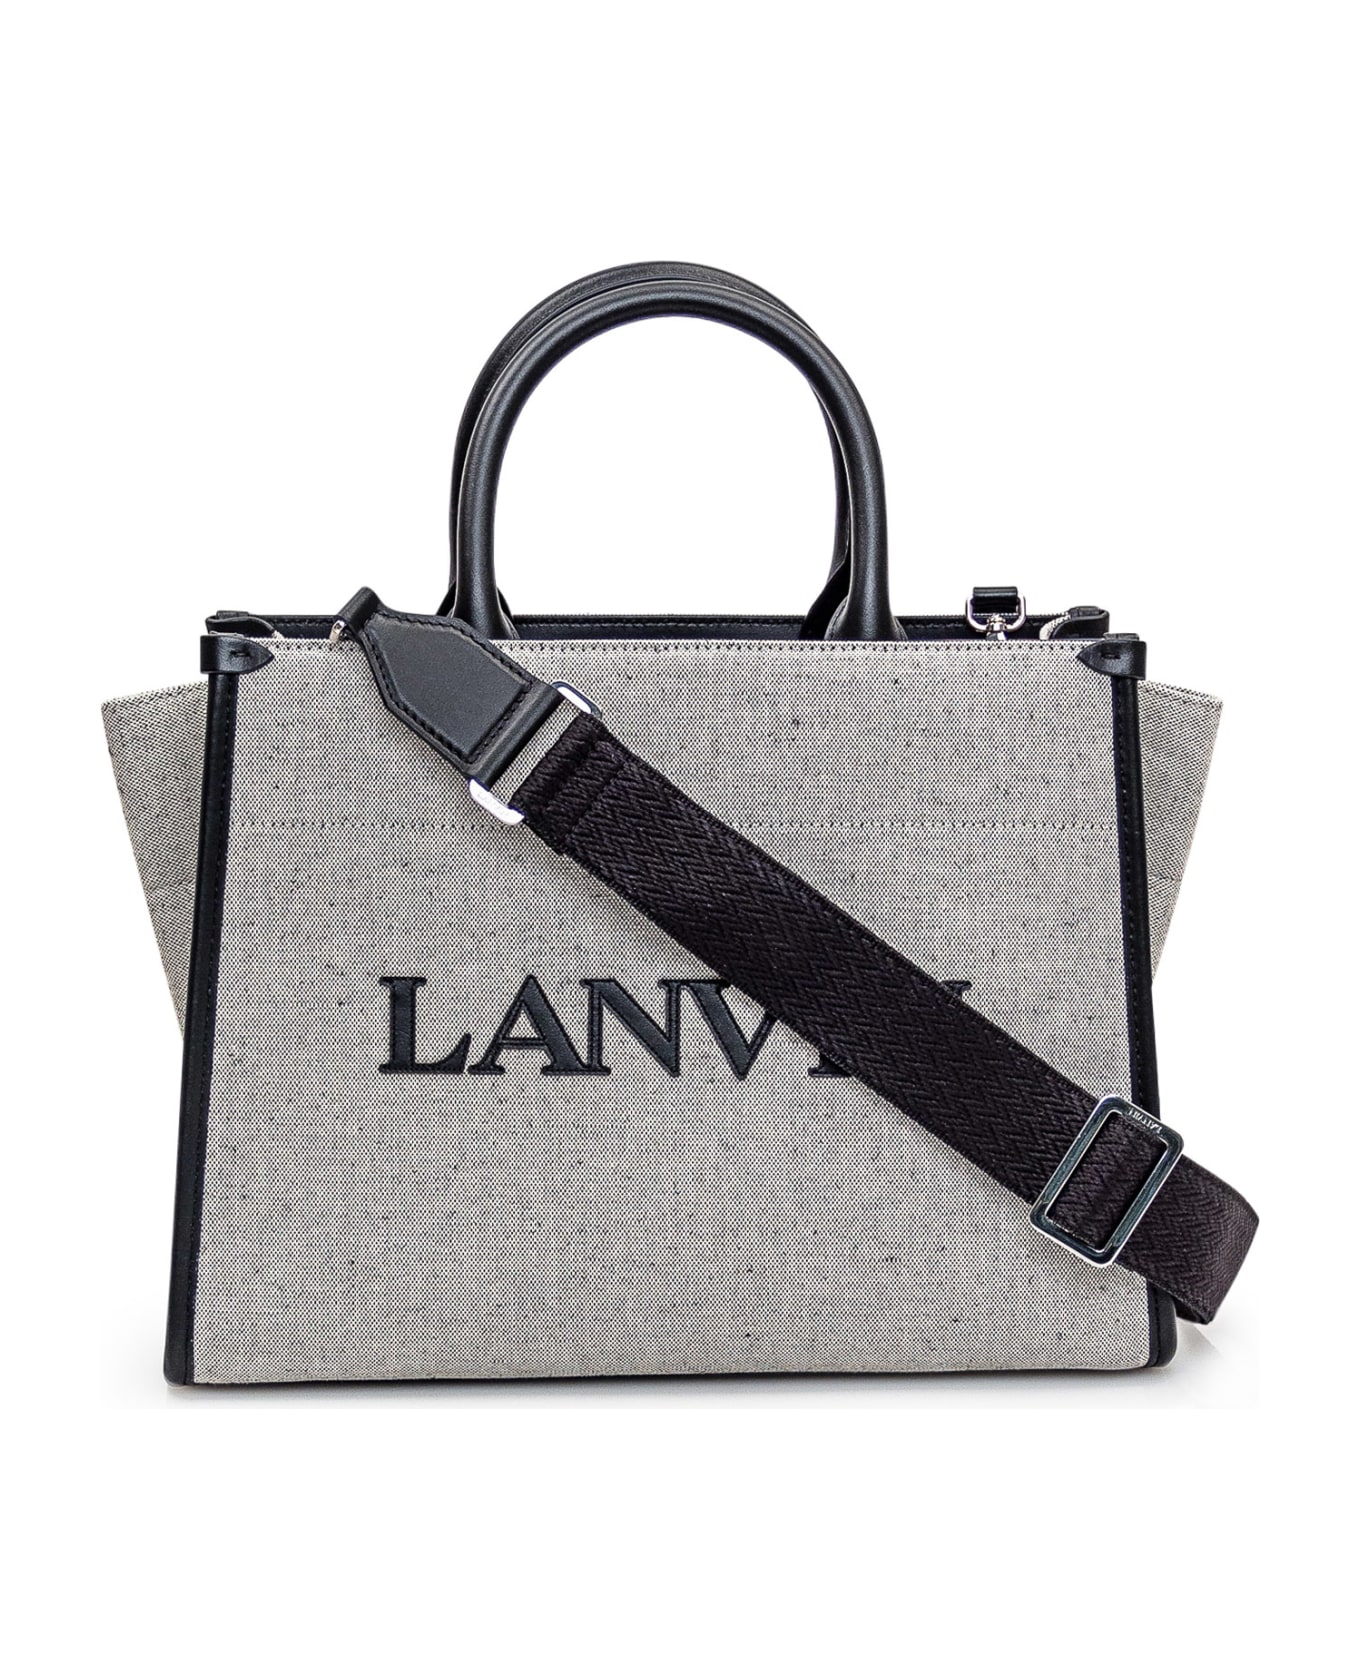 Lanvin Tote Bag - BEIGE/BLACK